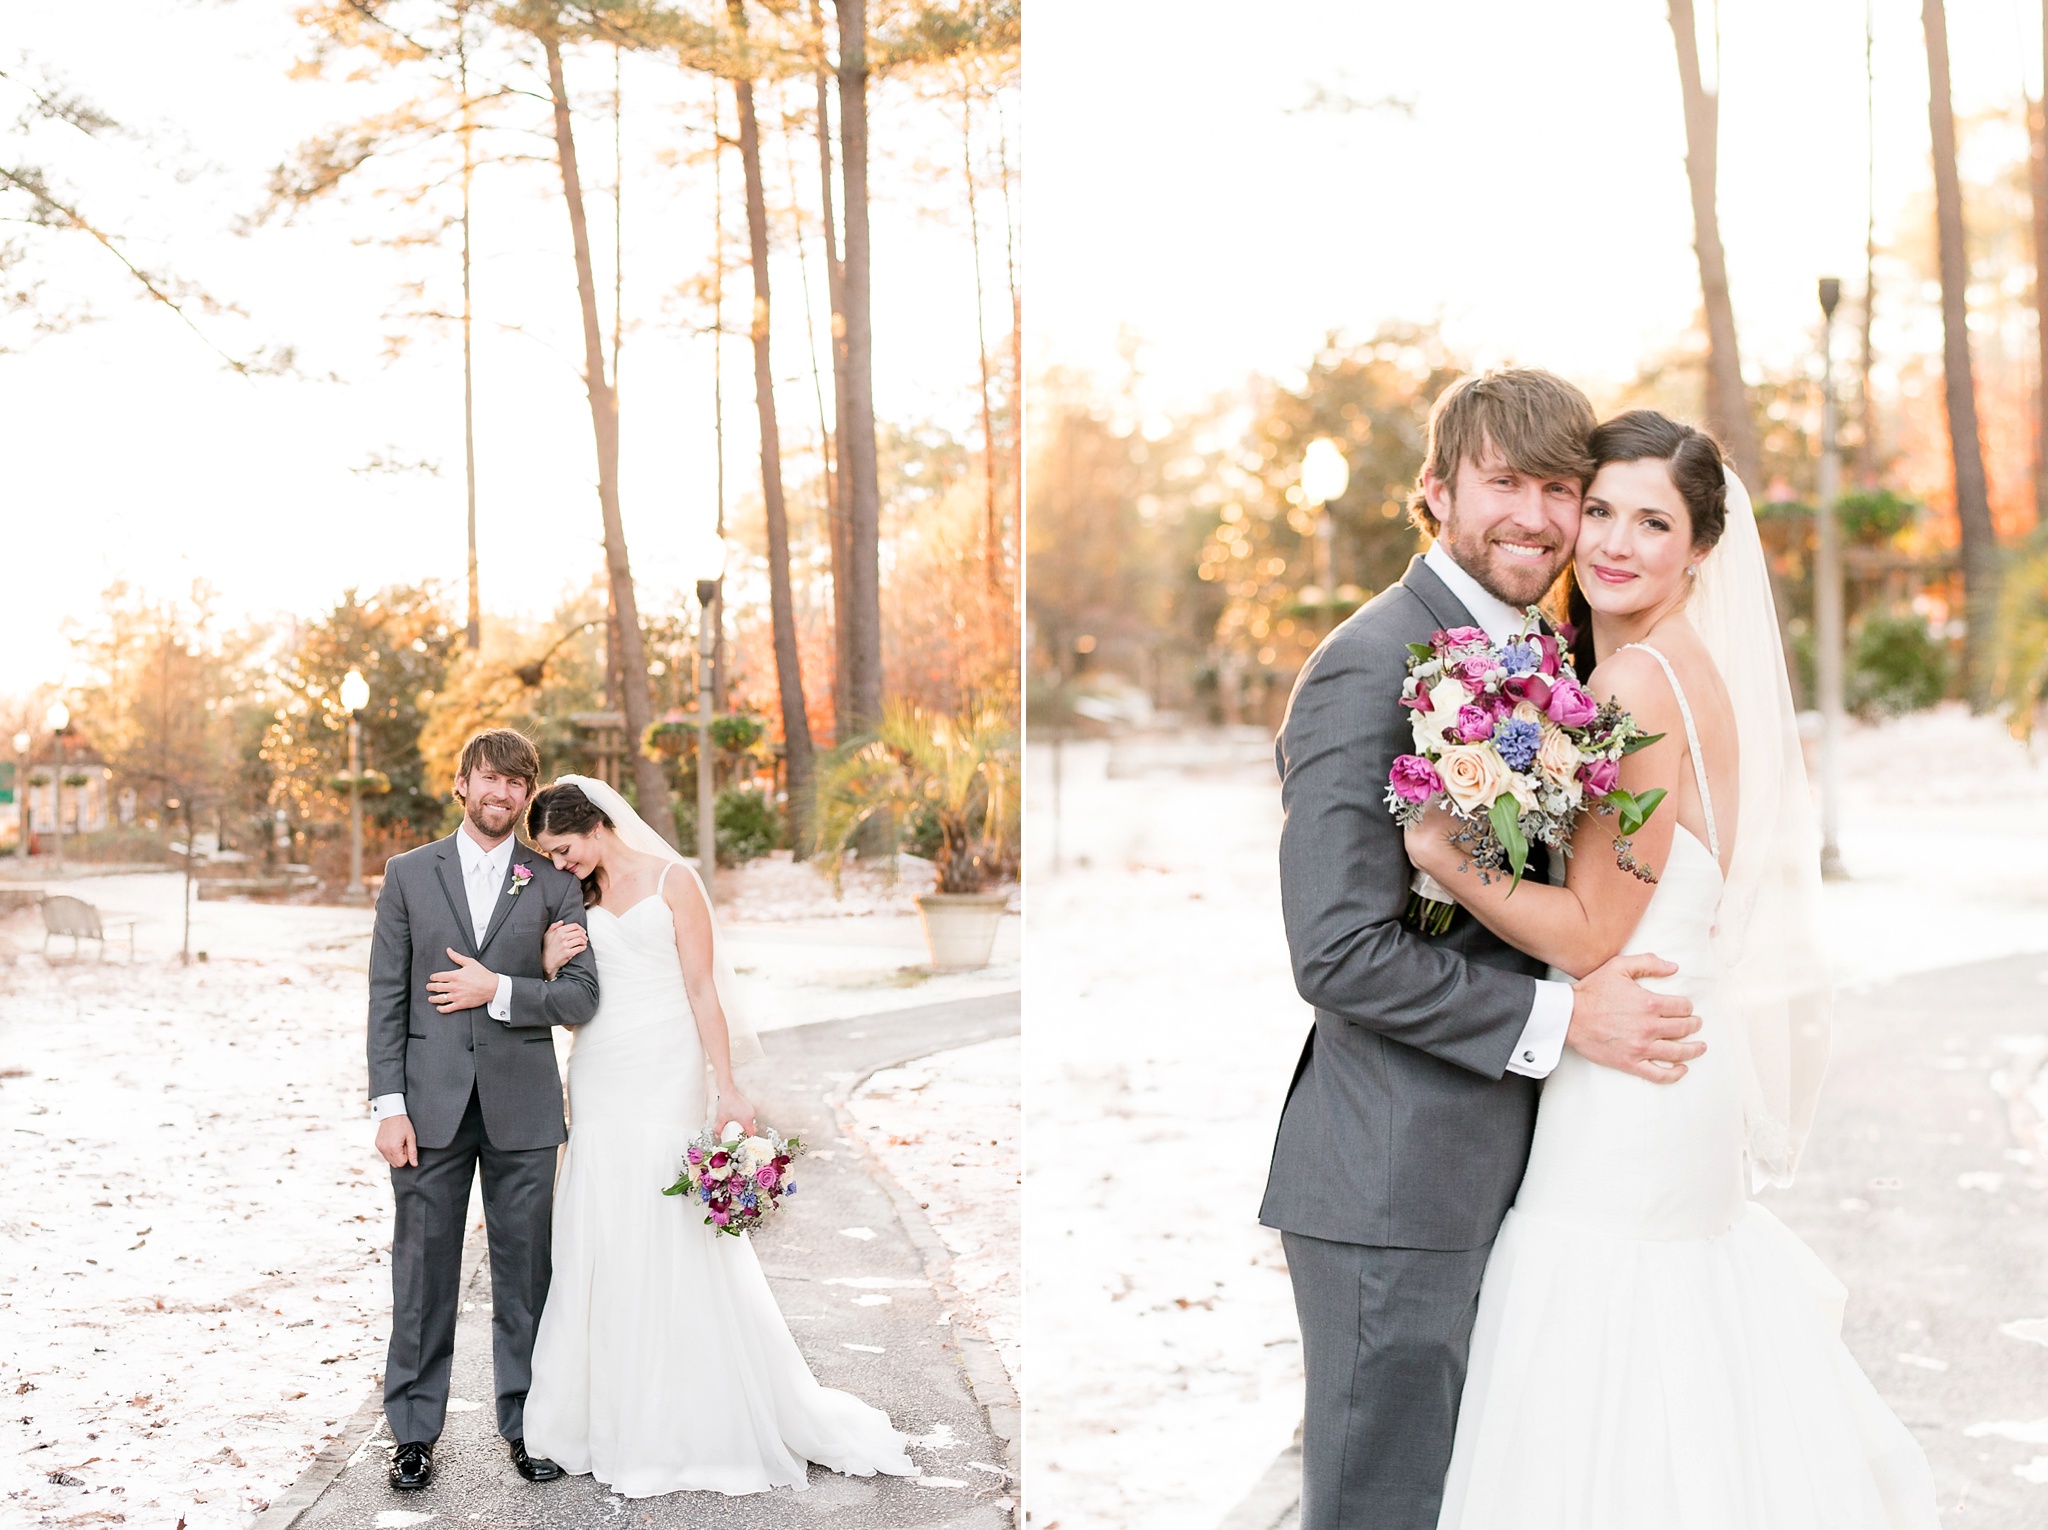 Snowy Winter Aldridge Gardens Wedding | Birmingham Alabama Wedding Photographers_0045.jpg